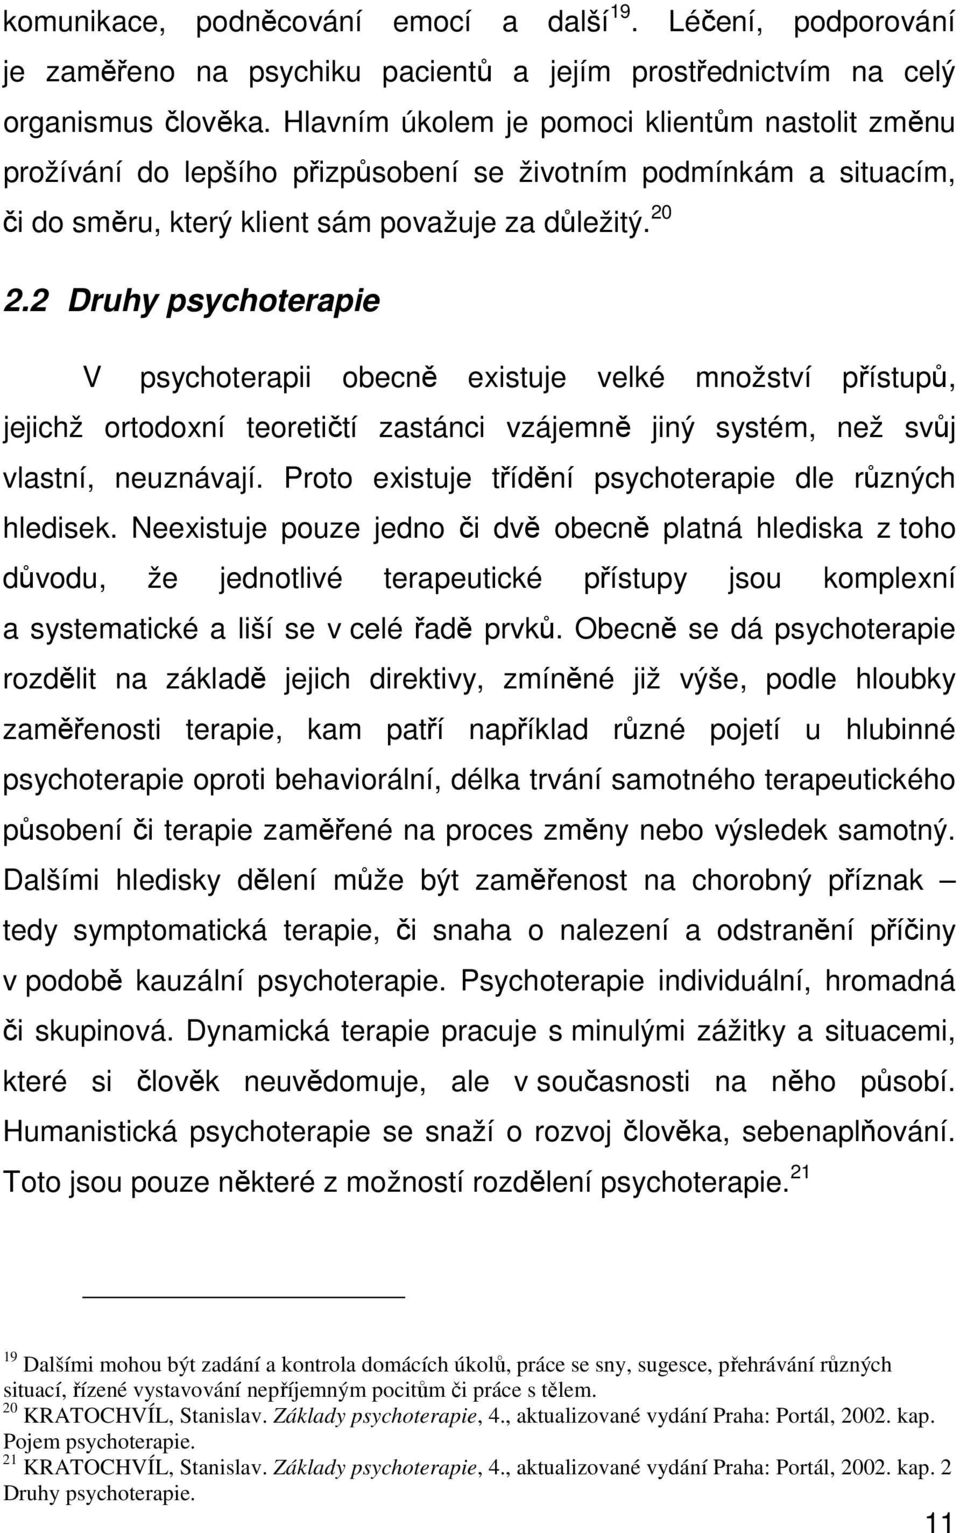 2 Druhy psychoterapie V psychoterapii obecně existuje velké množství přístupů, jejichž ortodoxní teoretičtí zastánci vzájemně jiný systém, než svůj vlastní, neuznávají.